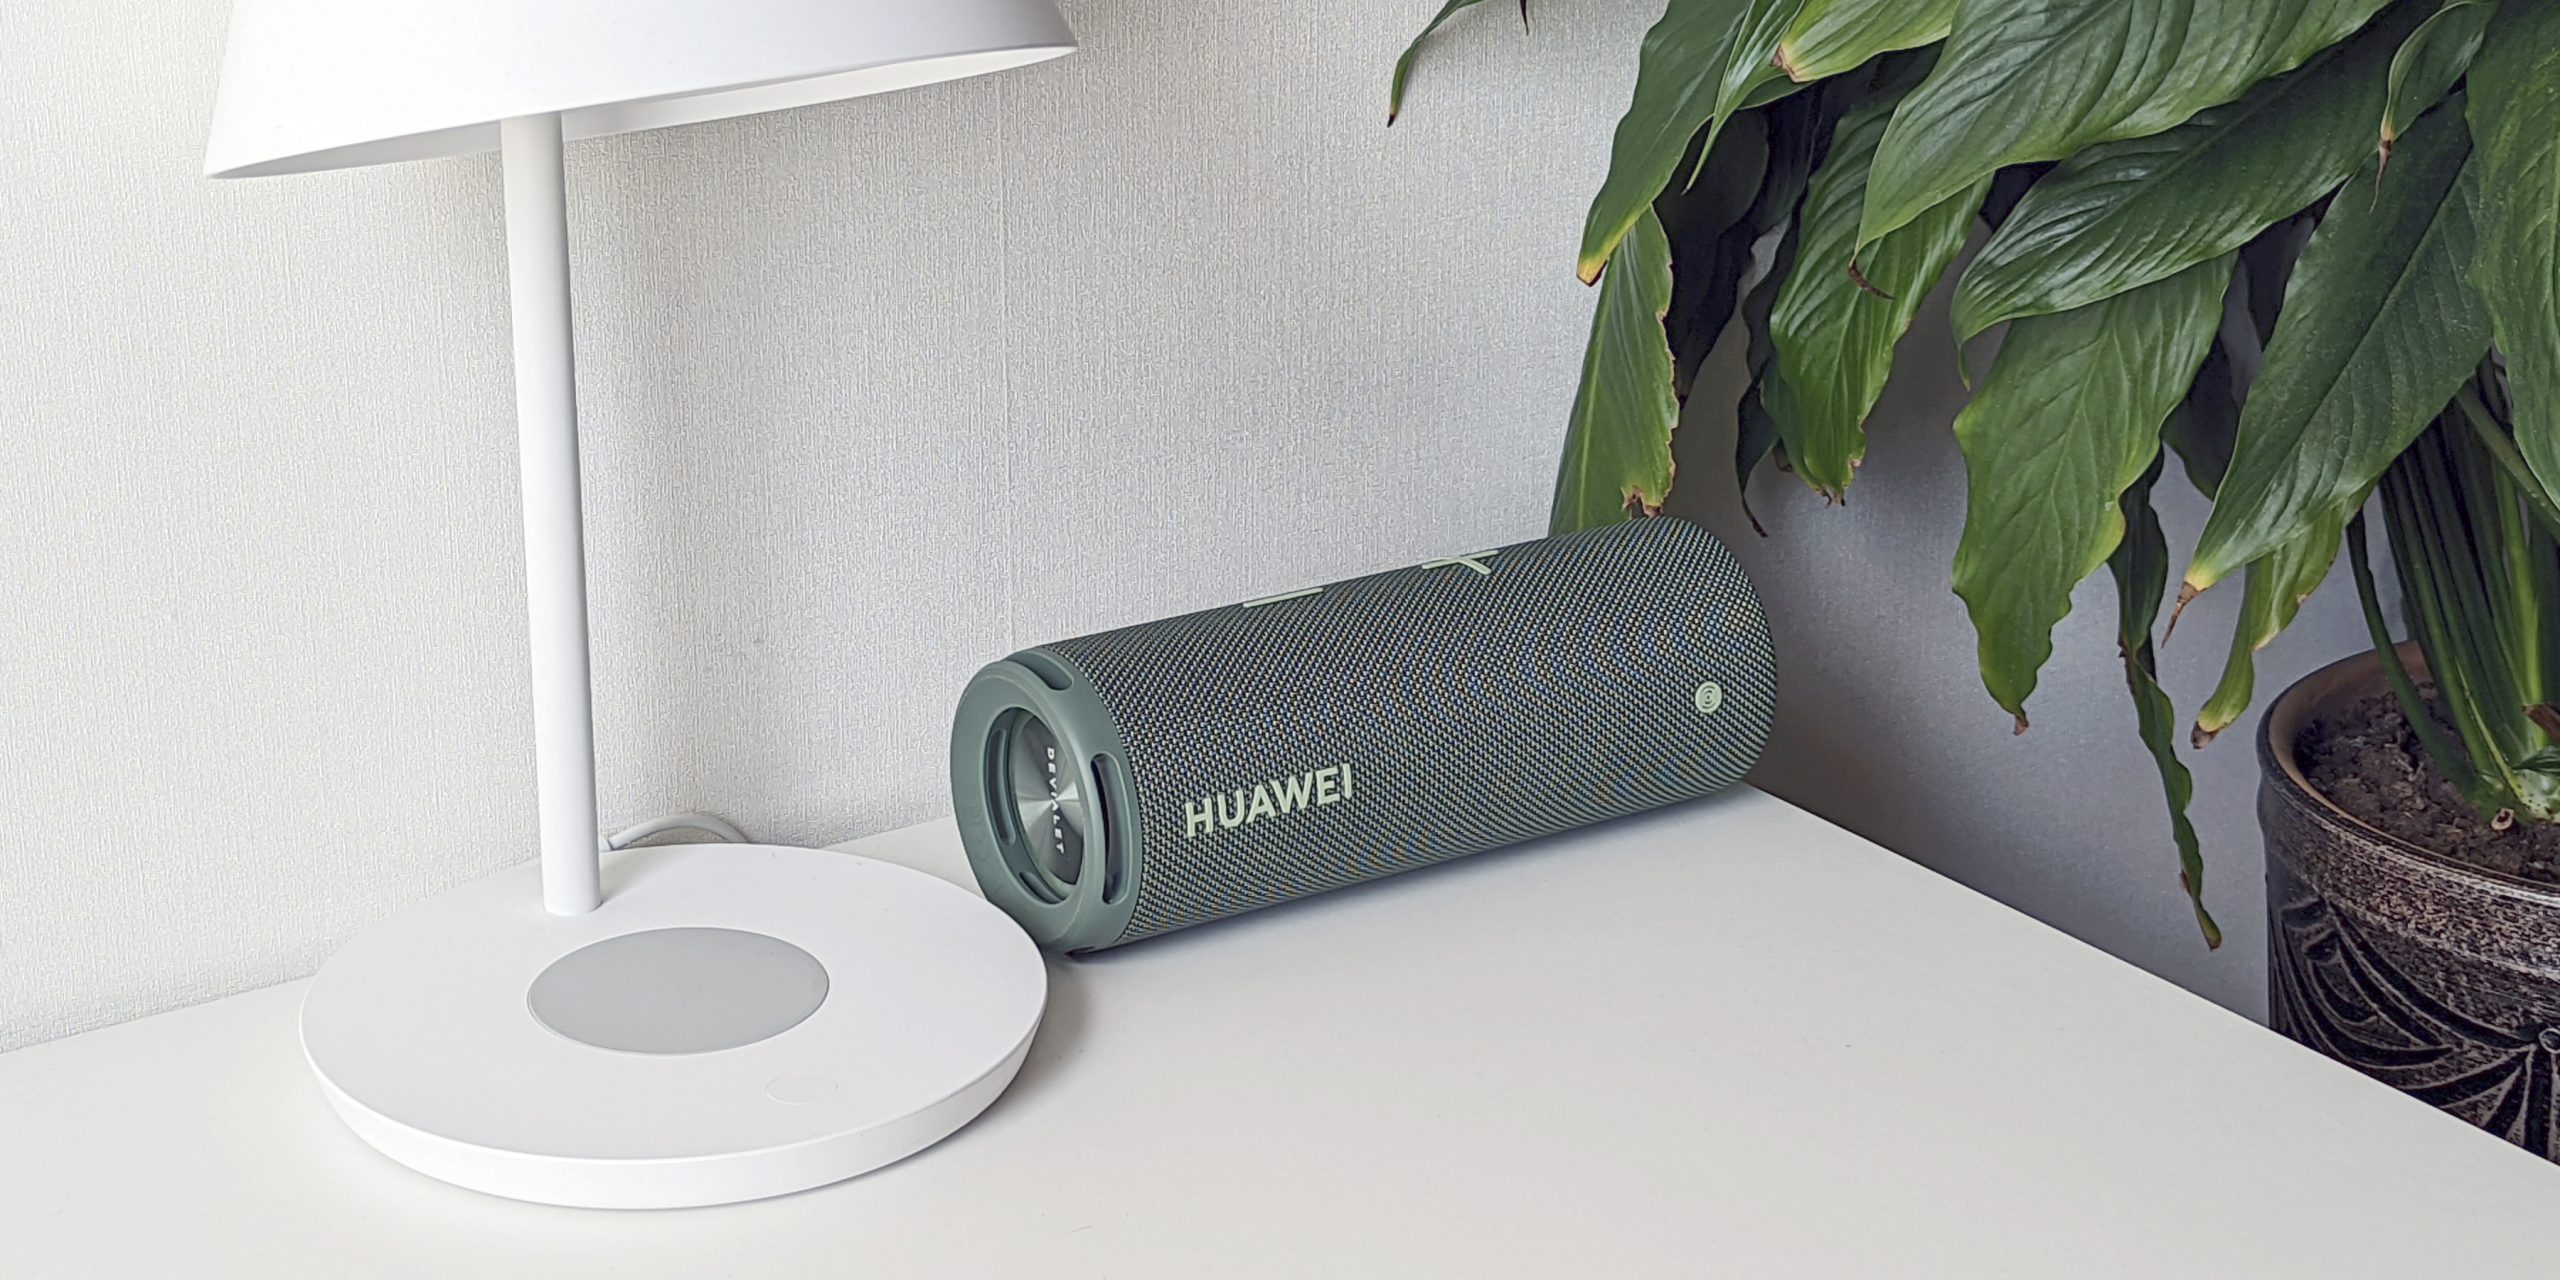 Колонка Huawei Sound Joy имеет цилиндрическую форму